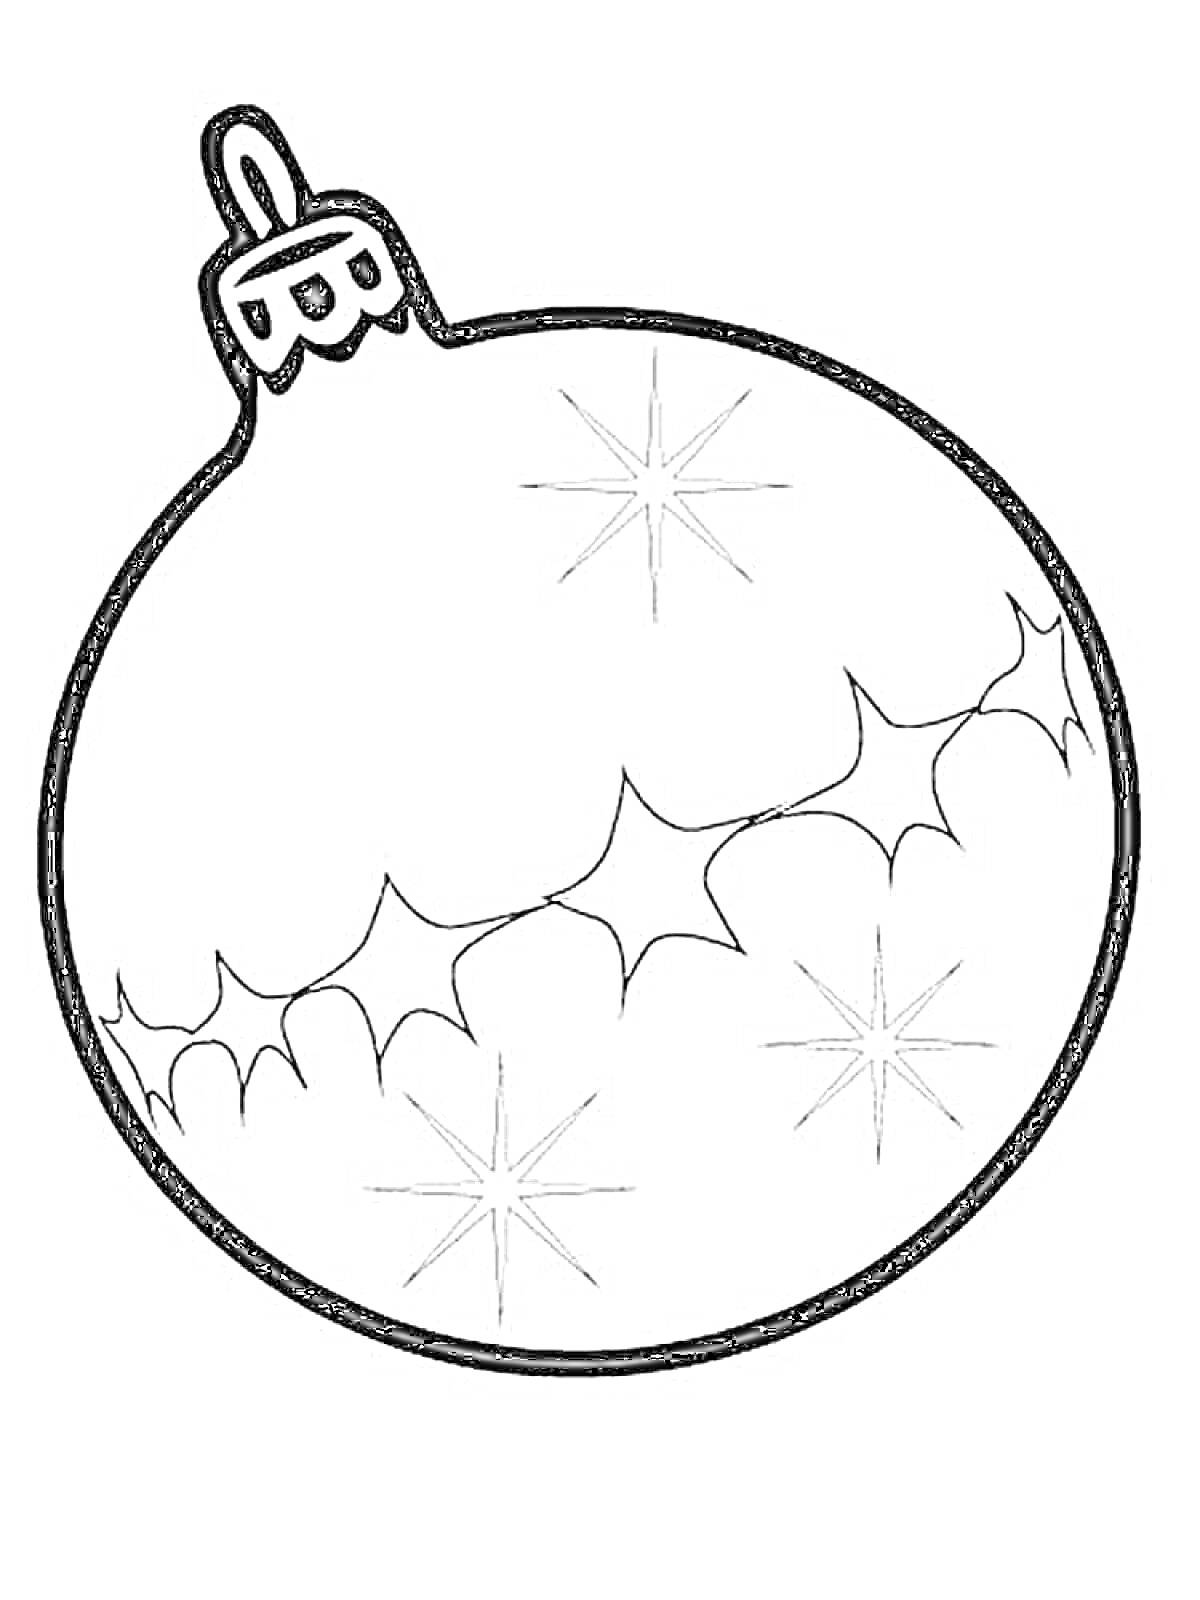 Раскраска новогодний шар с узором из снежинок и зимних листьев